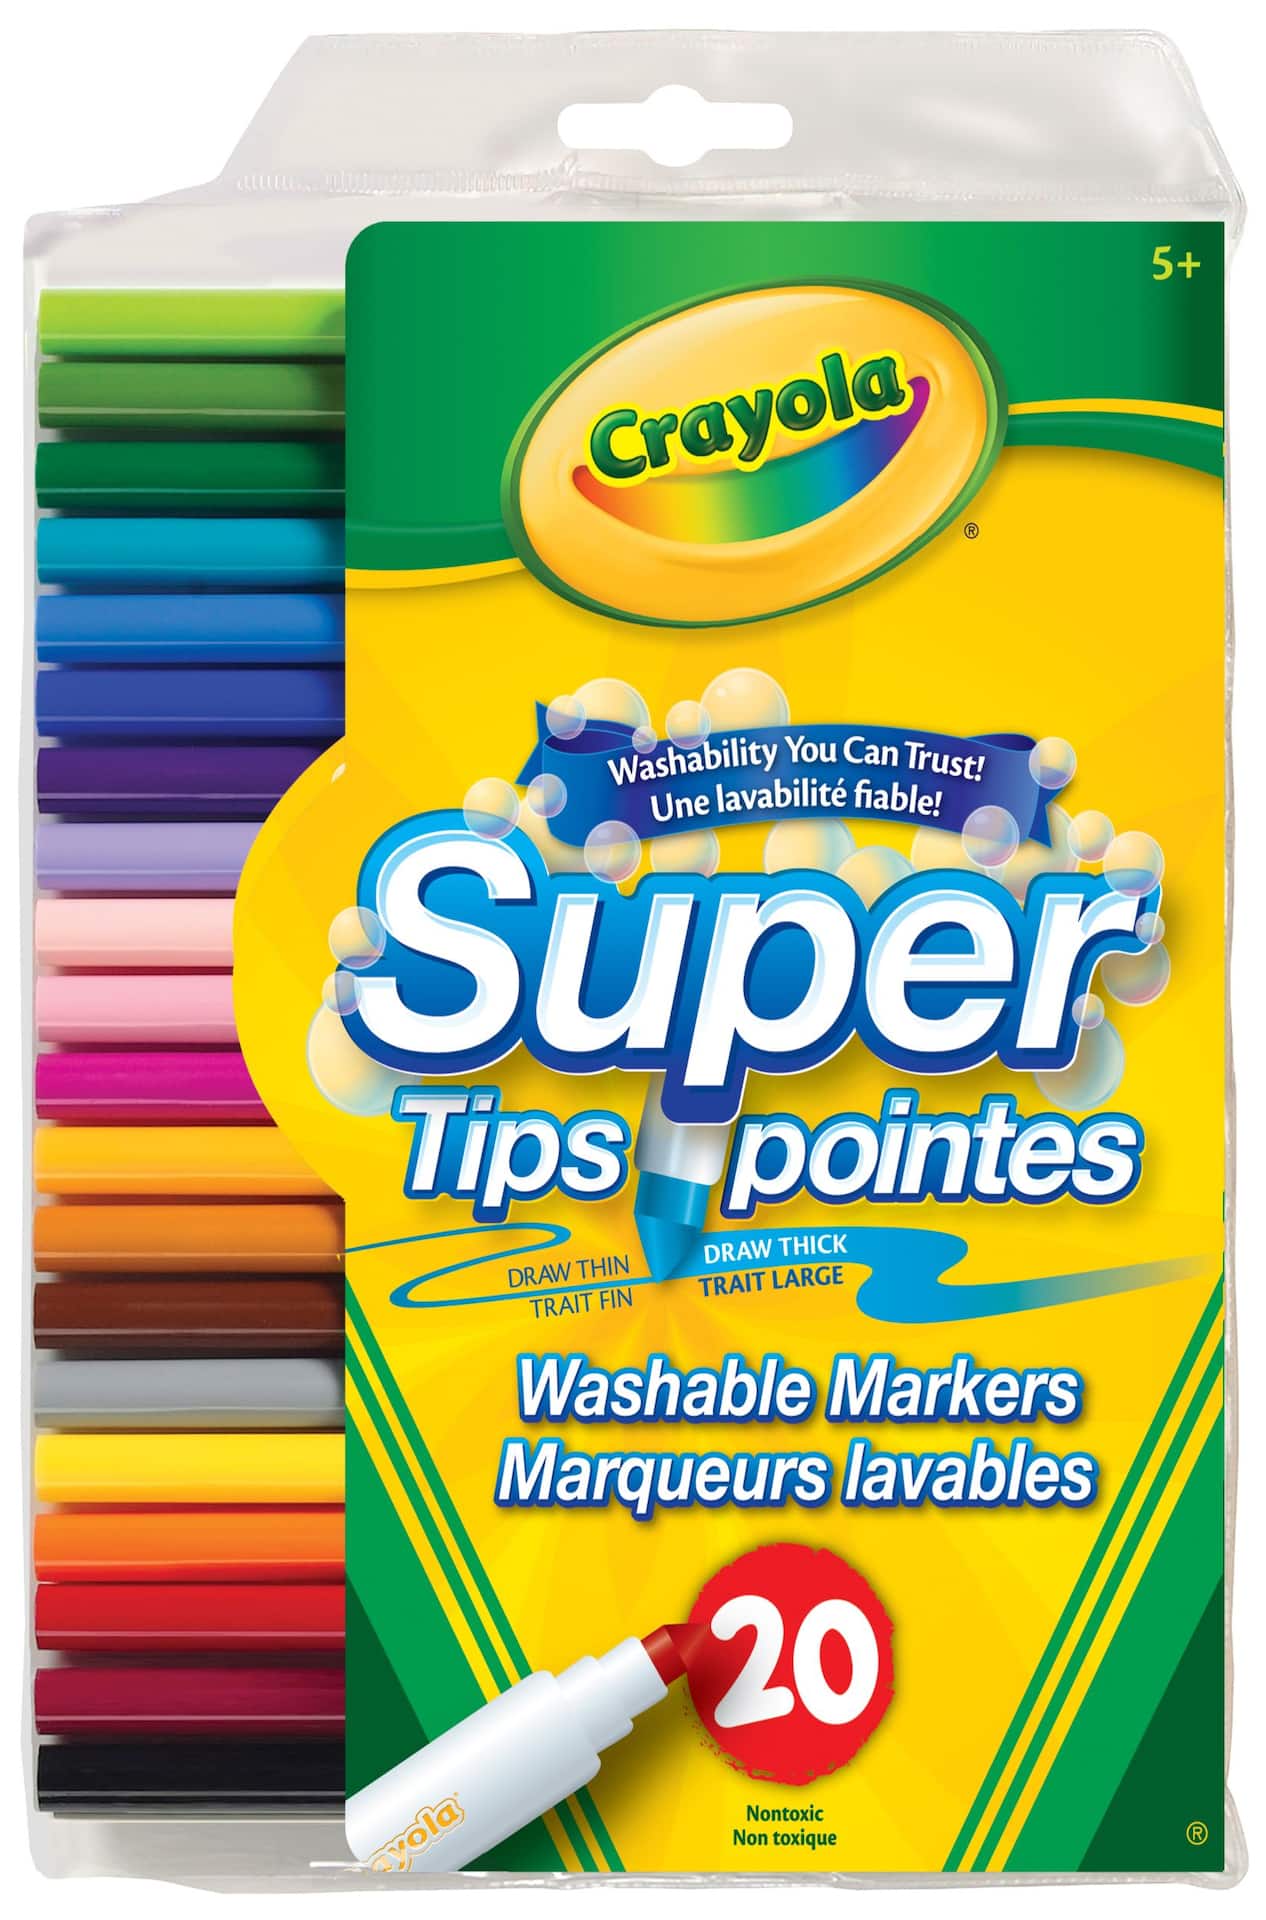 Marqueurs lavables à pointes épaisses et minces Crayola Super Tip, paq. 20